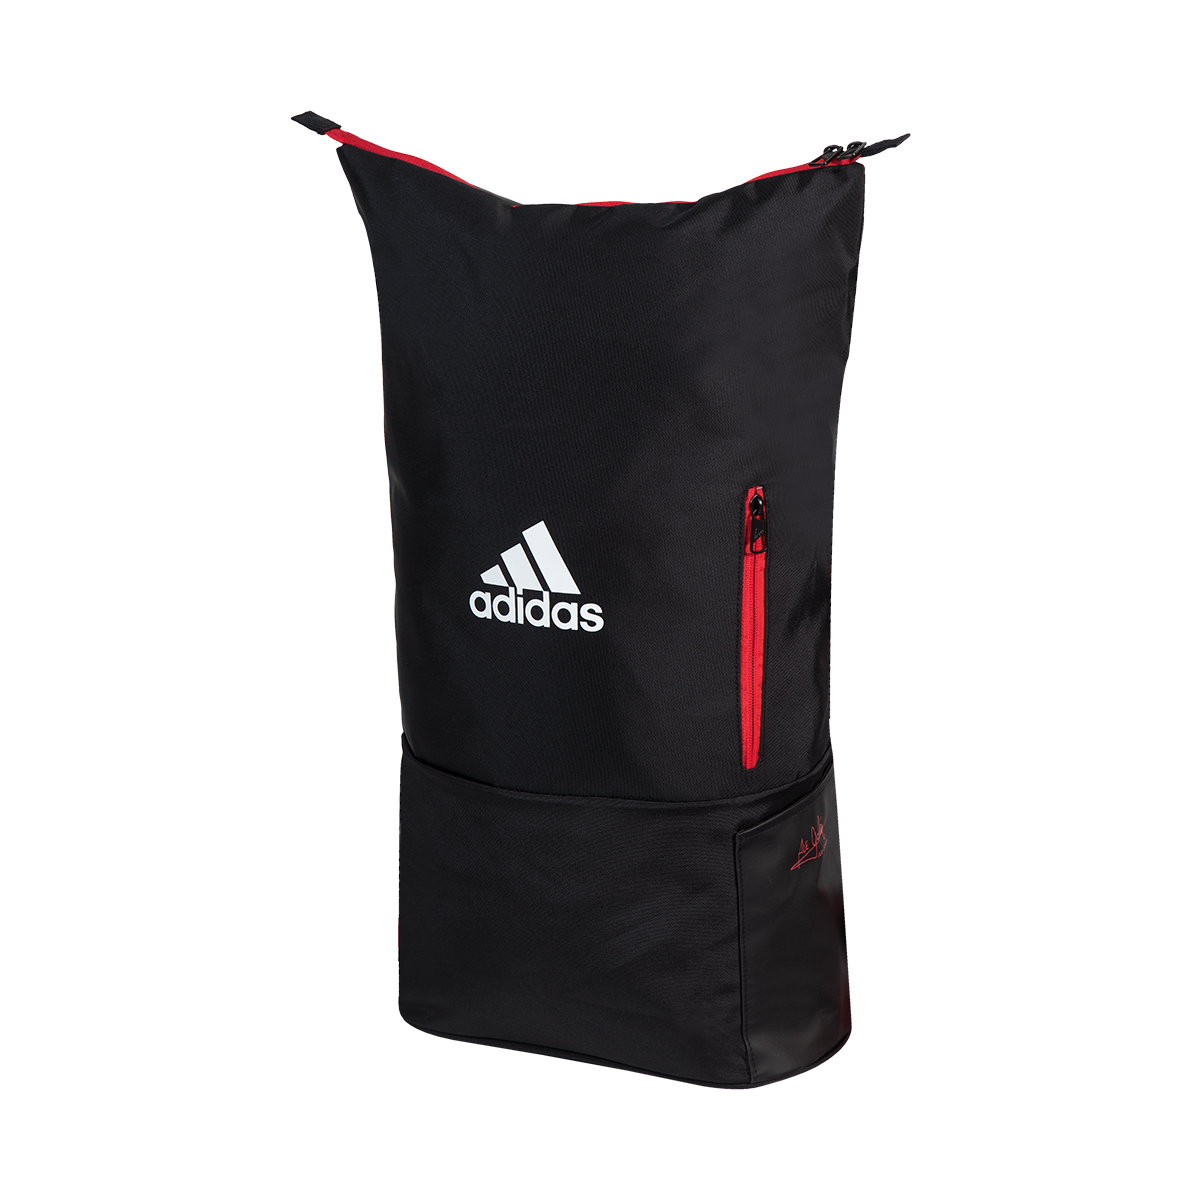 Image du sac à dos de padel Adidas multigame noir et rouge